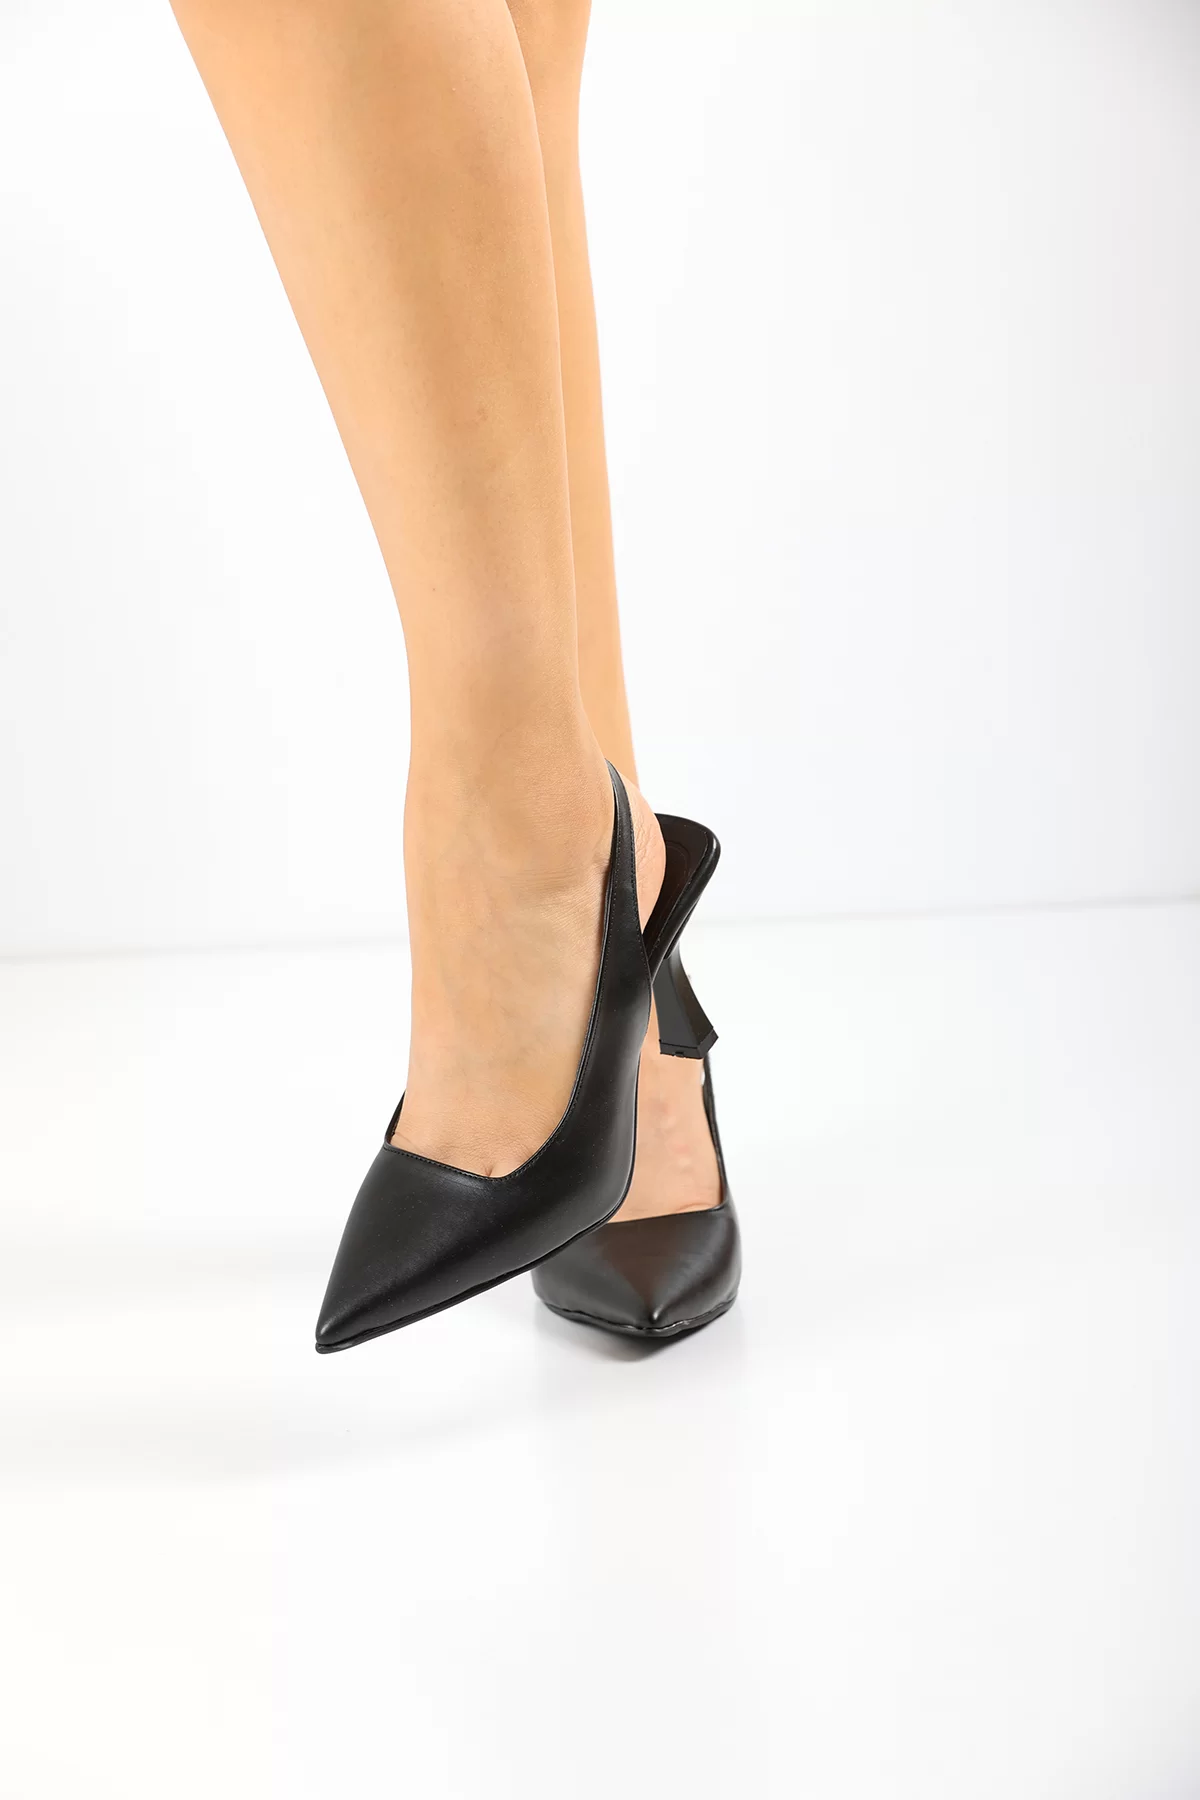 Kadın Zr Model Klasik Topuklu Ayakkabı 5180